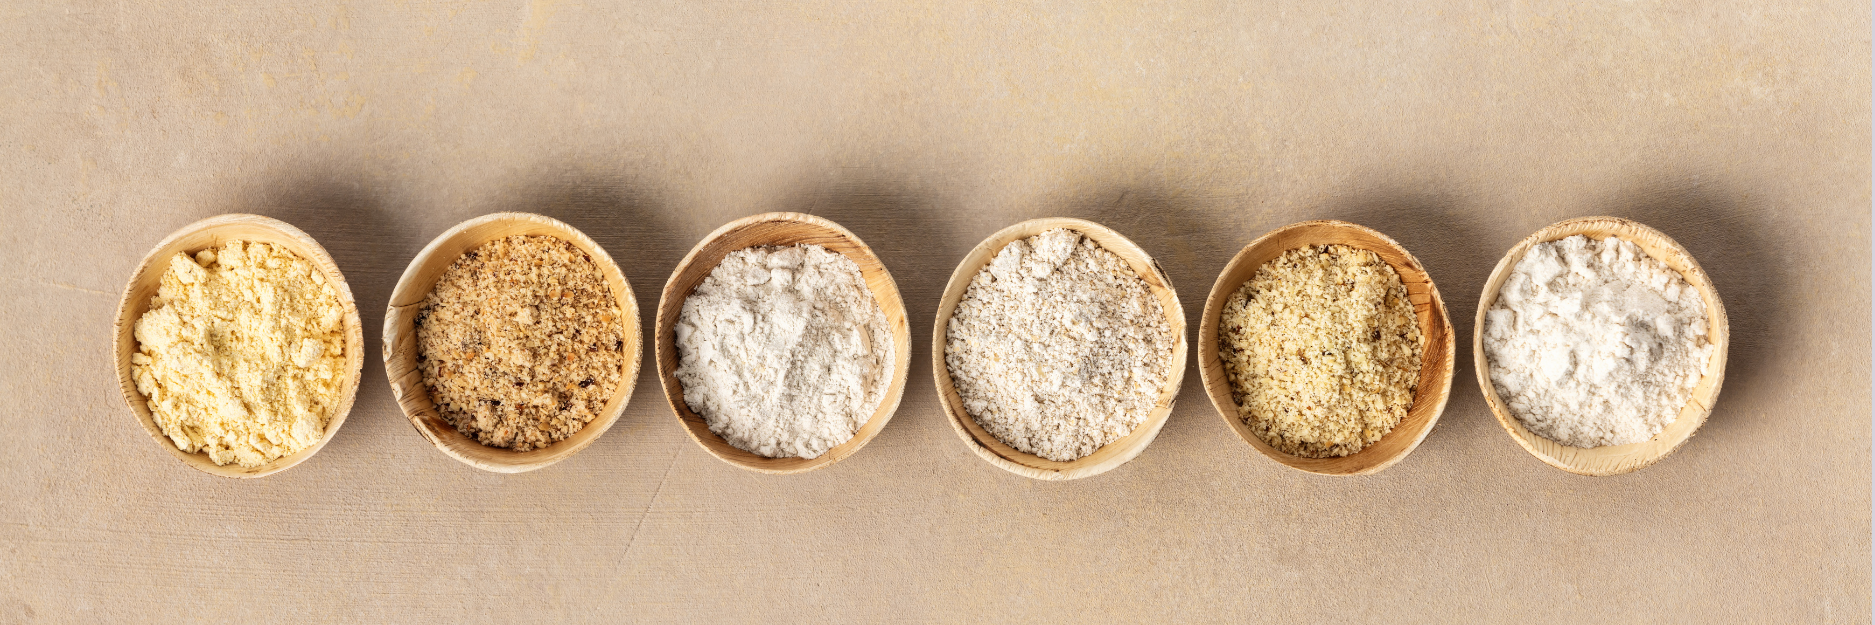 Foto de 6 tipos de farinhas diferentes. Contendo a farinha branca.